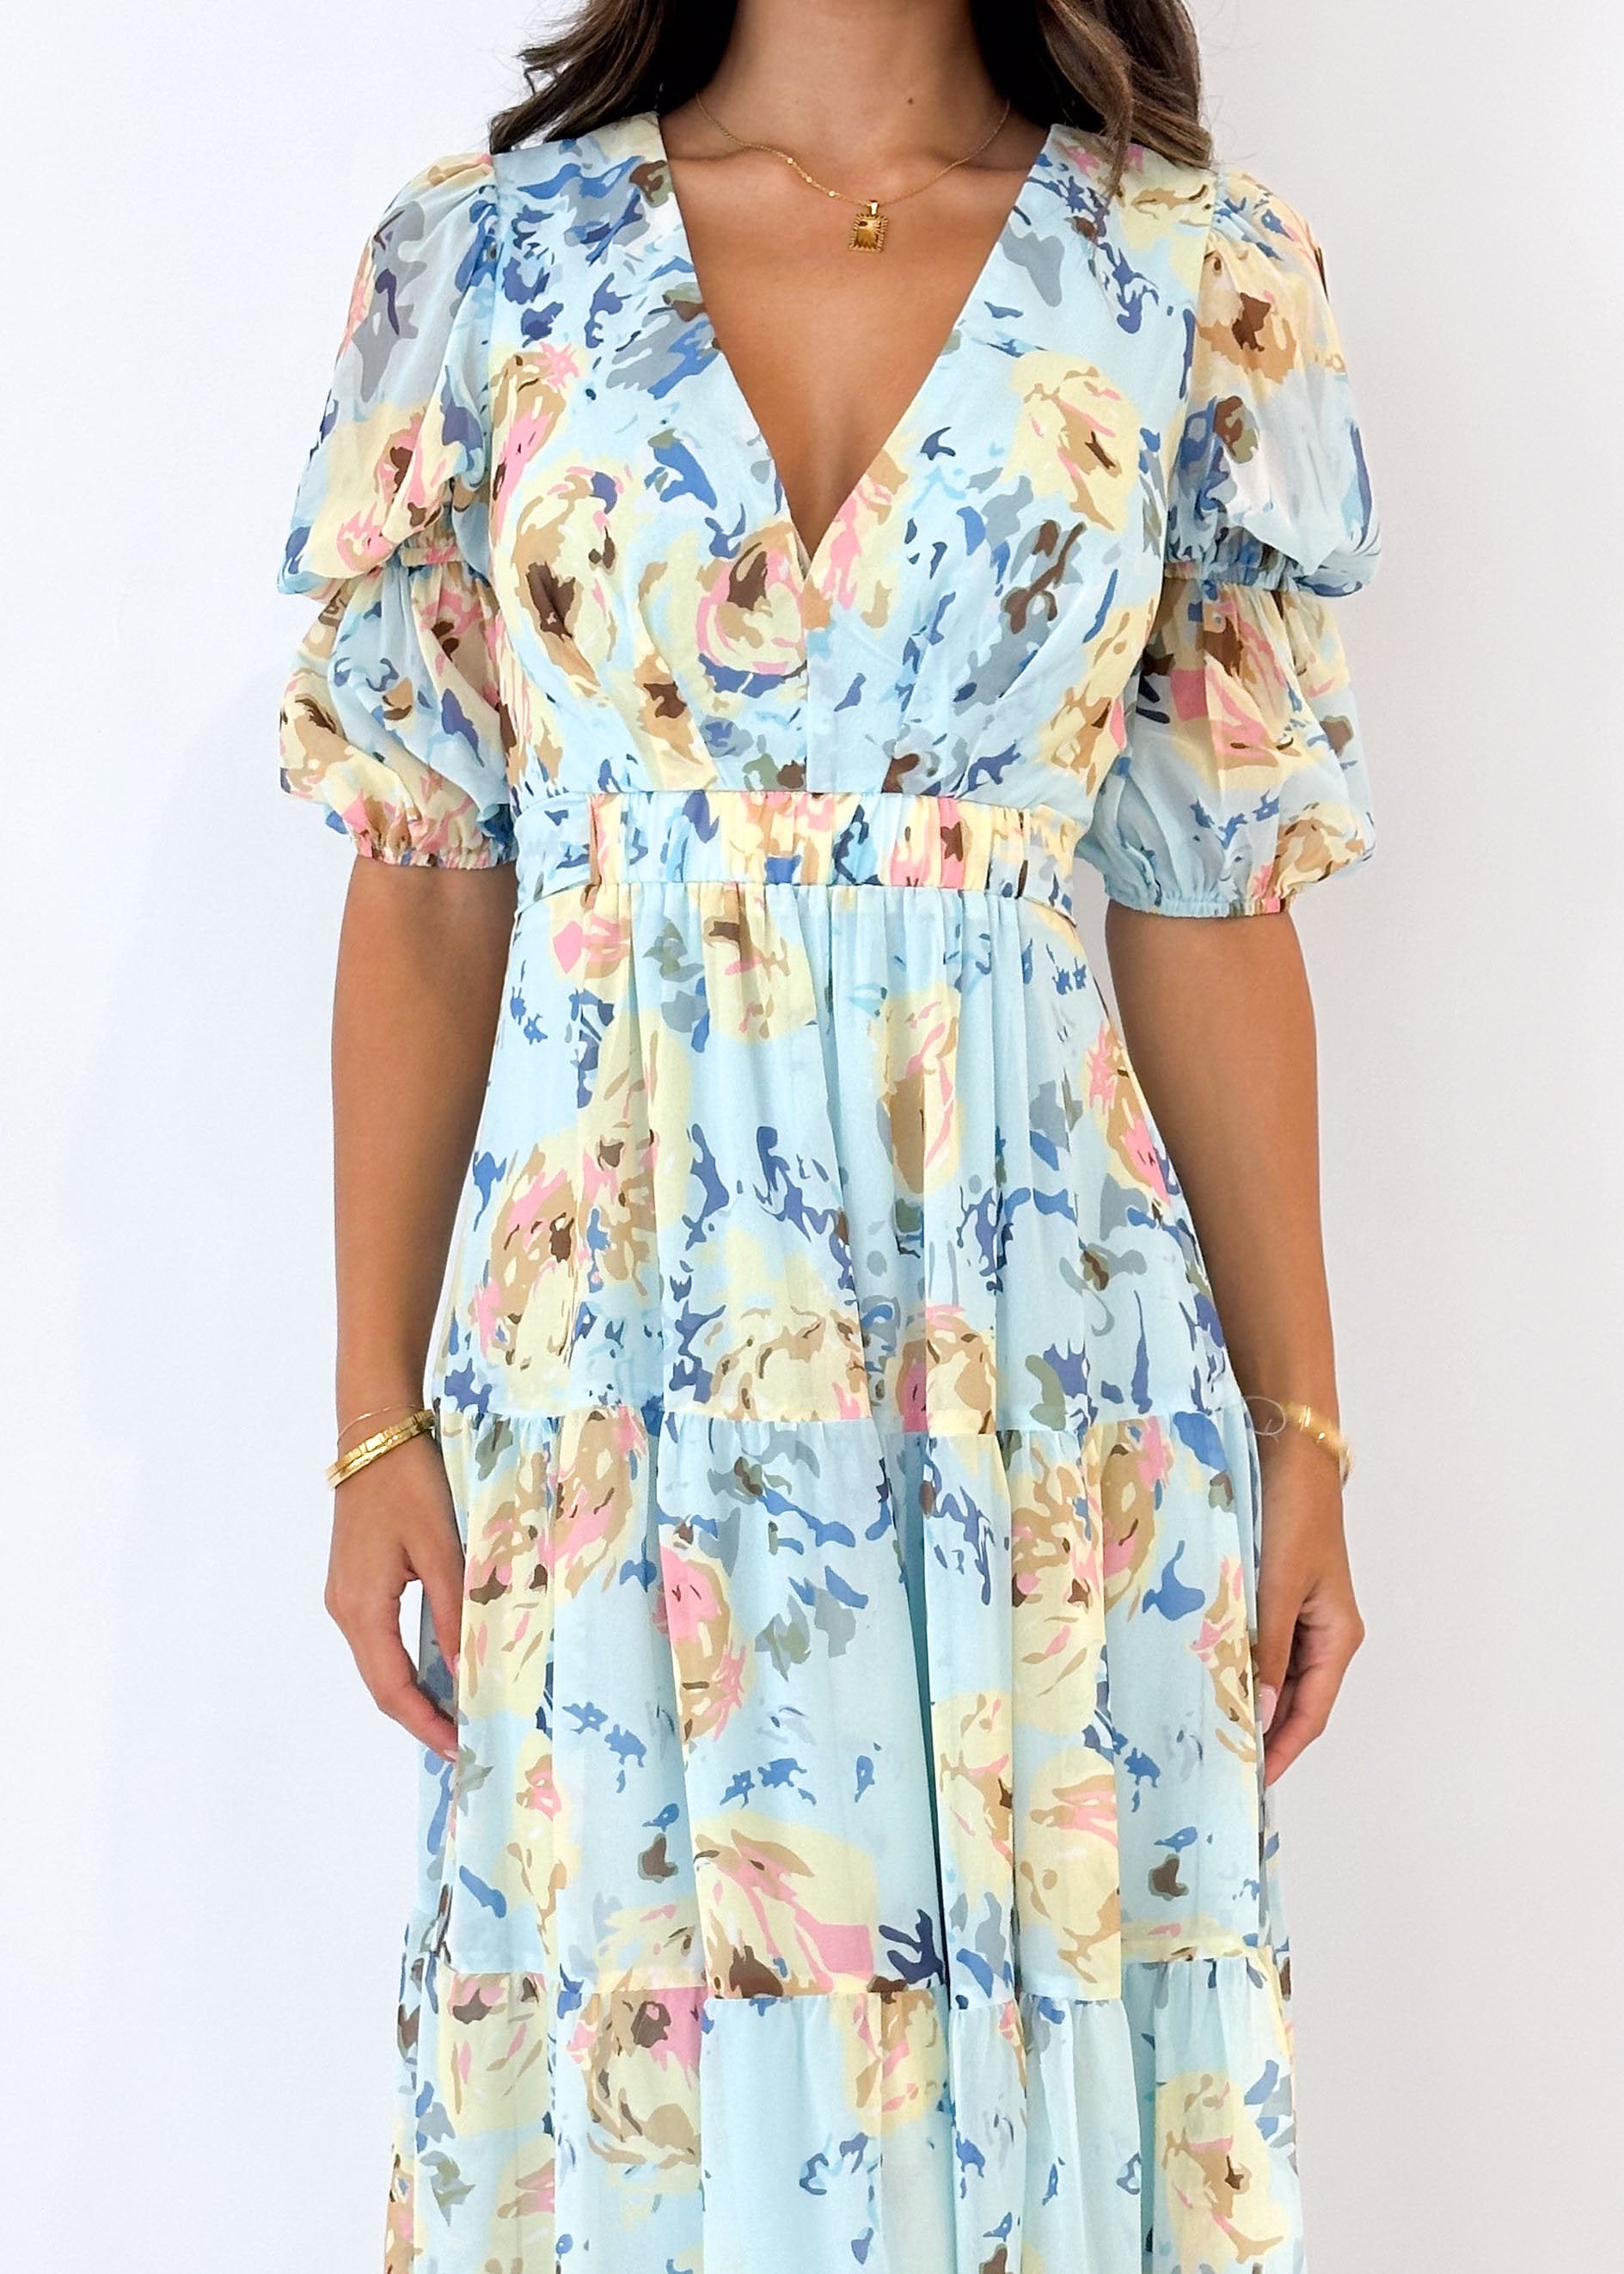 Armella Maxi Dress - Pale Blue Floral